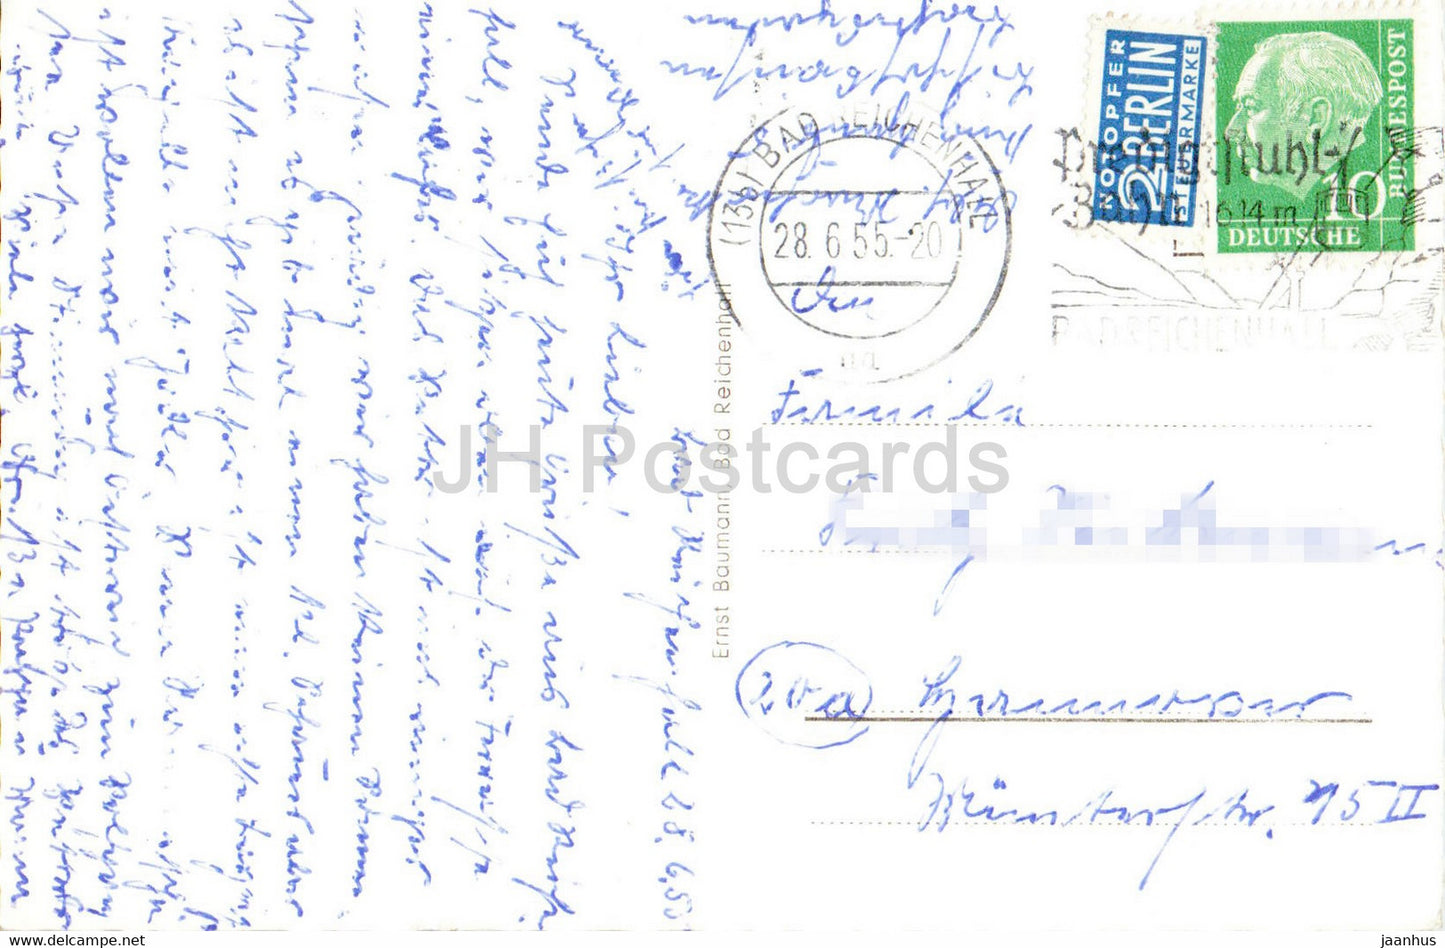 Bad Reichenhall von Nonn - alte Postkarte - 1955 - Deutschland - gebraucht